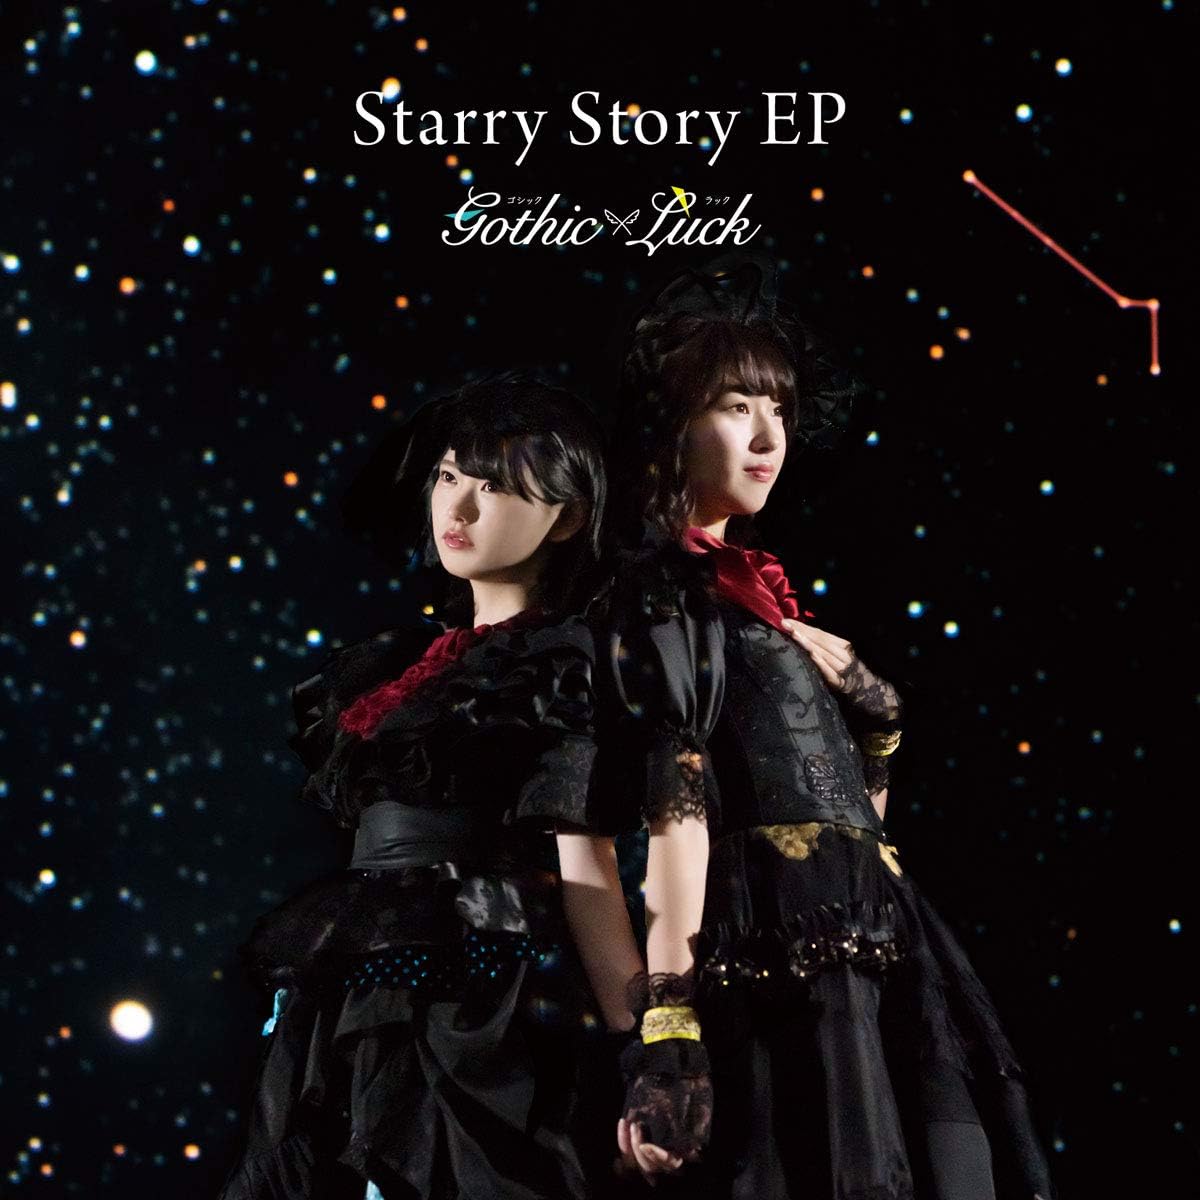 【中古】[538] CD Gothic×Luck Starry Story EP (通常盤) 新品ケース交換 送料無料 VICL-65127